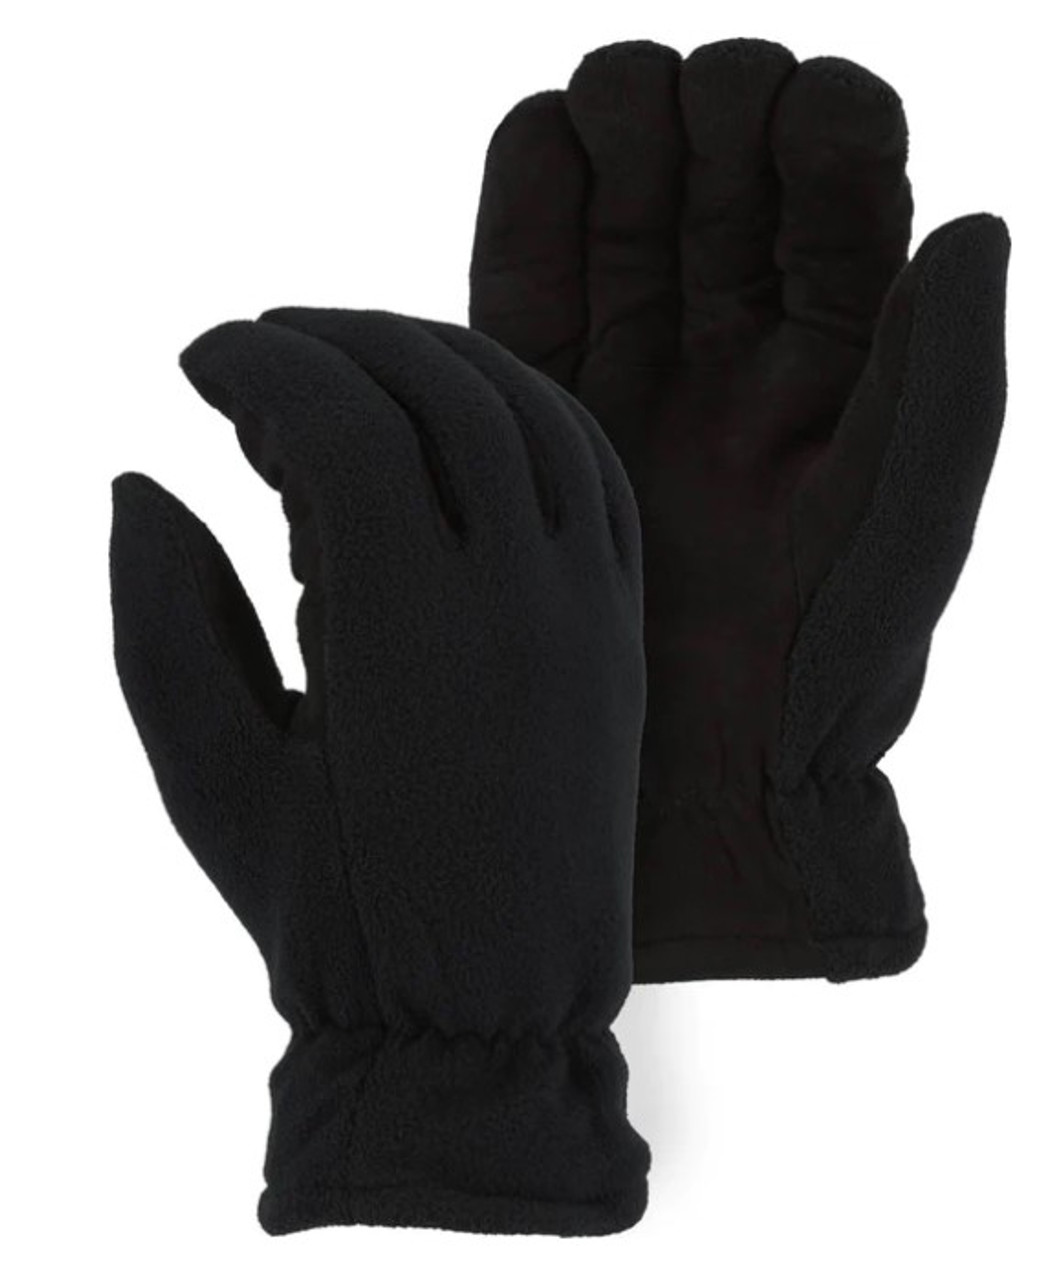 Majestic Glove - 1668 Winter Lined Fleece & Split Deerskin Glove (KIDS SIZES)